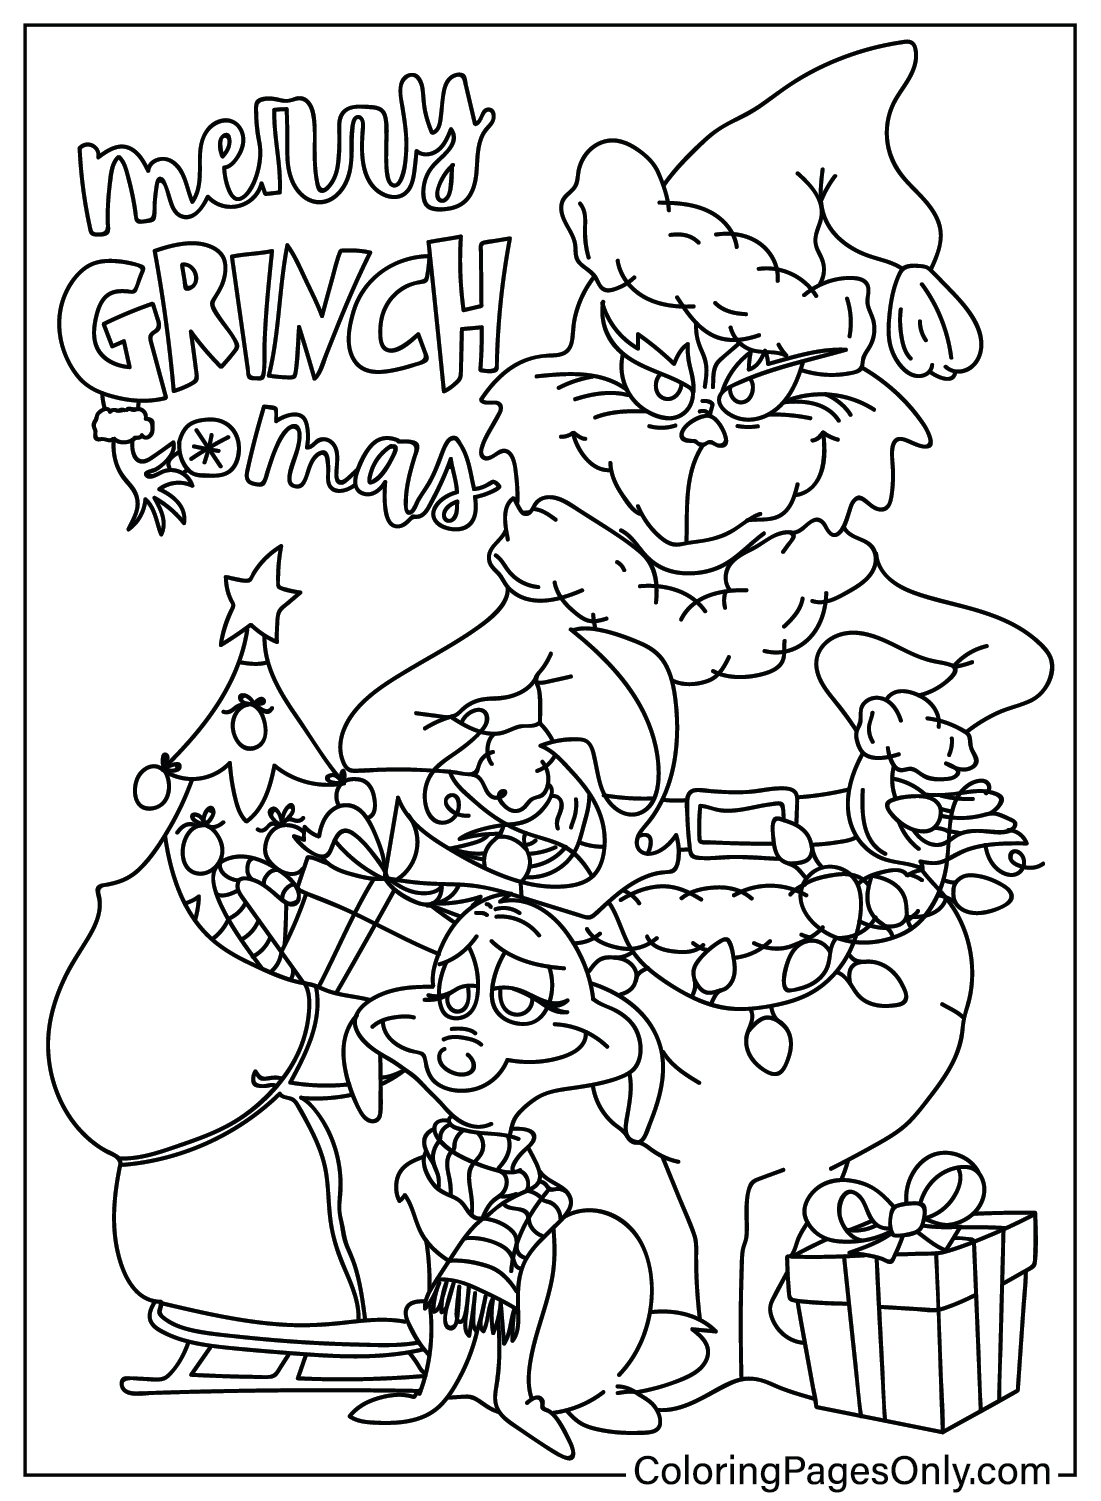 Página para colorear de Grinch para imprimir gratis de Grinch